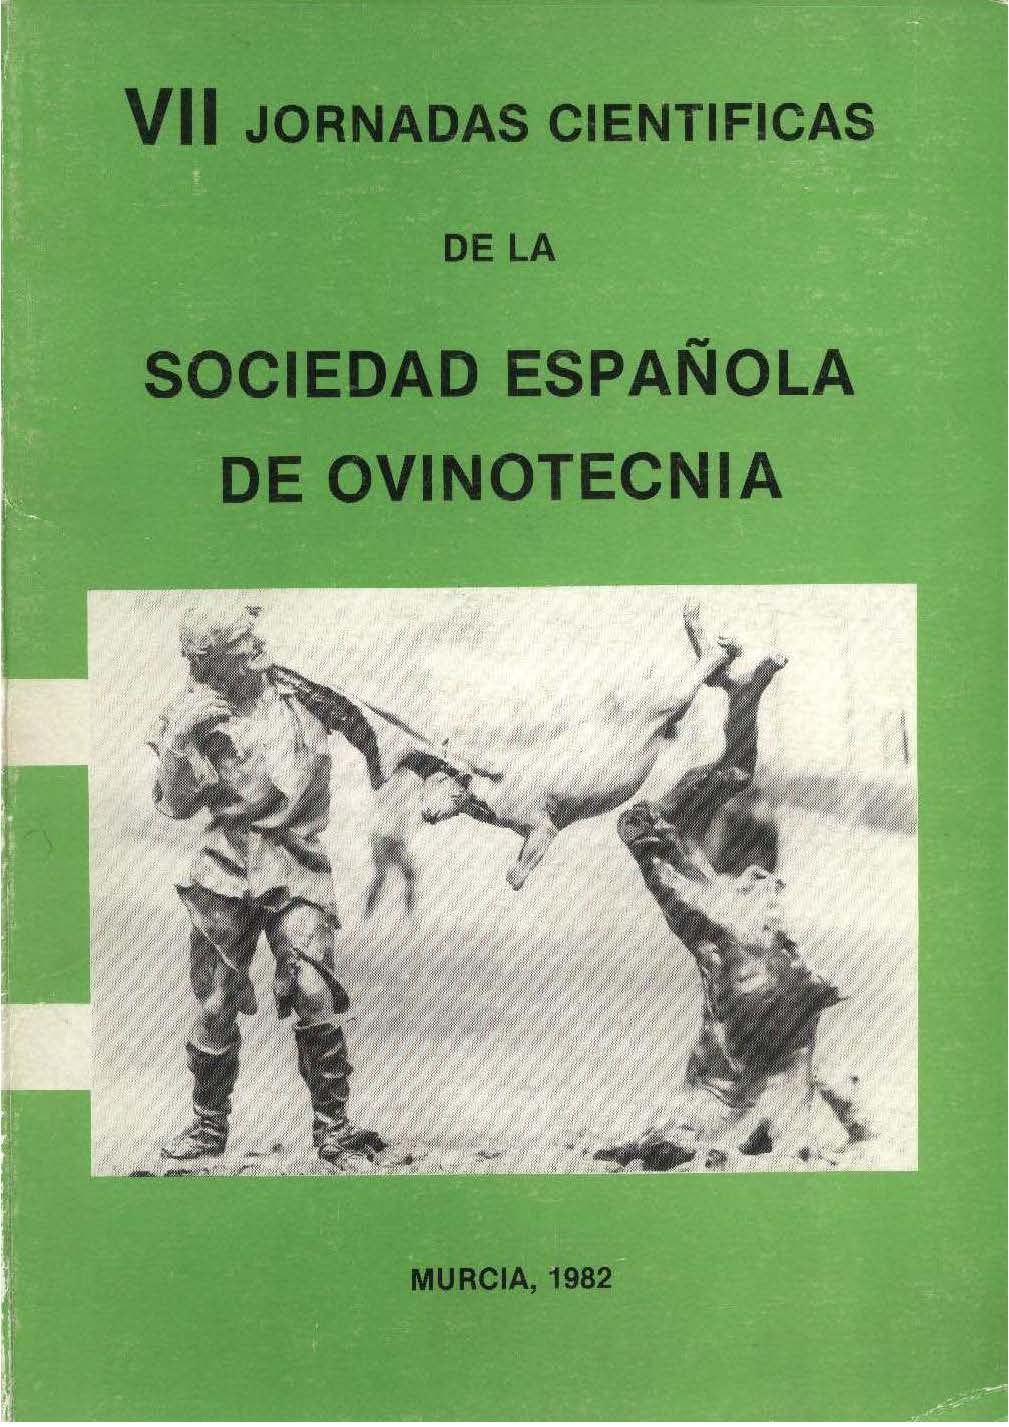 Imagen de portada del libro Trabajos presentados a las VII Jornadas Científicas de la Sociedad Española de Ovinotecnia